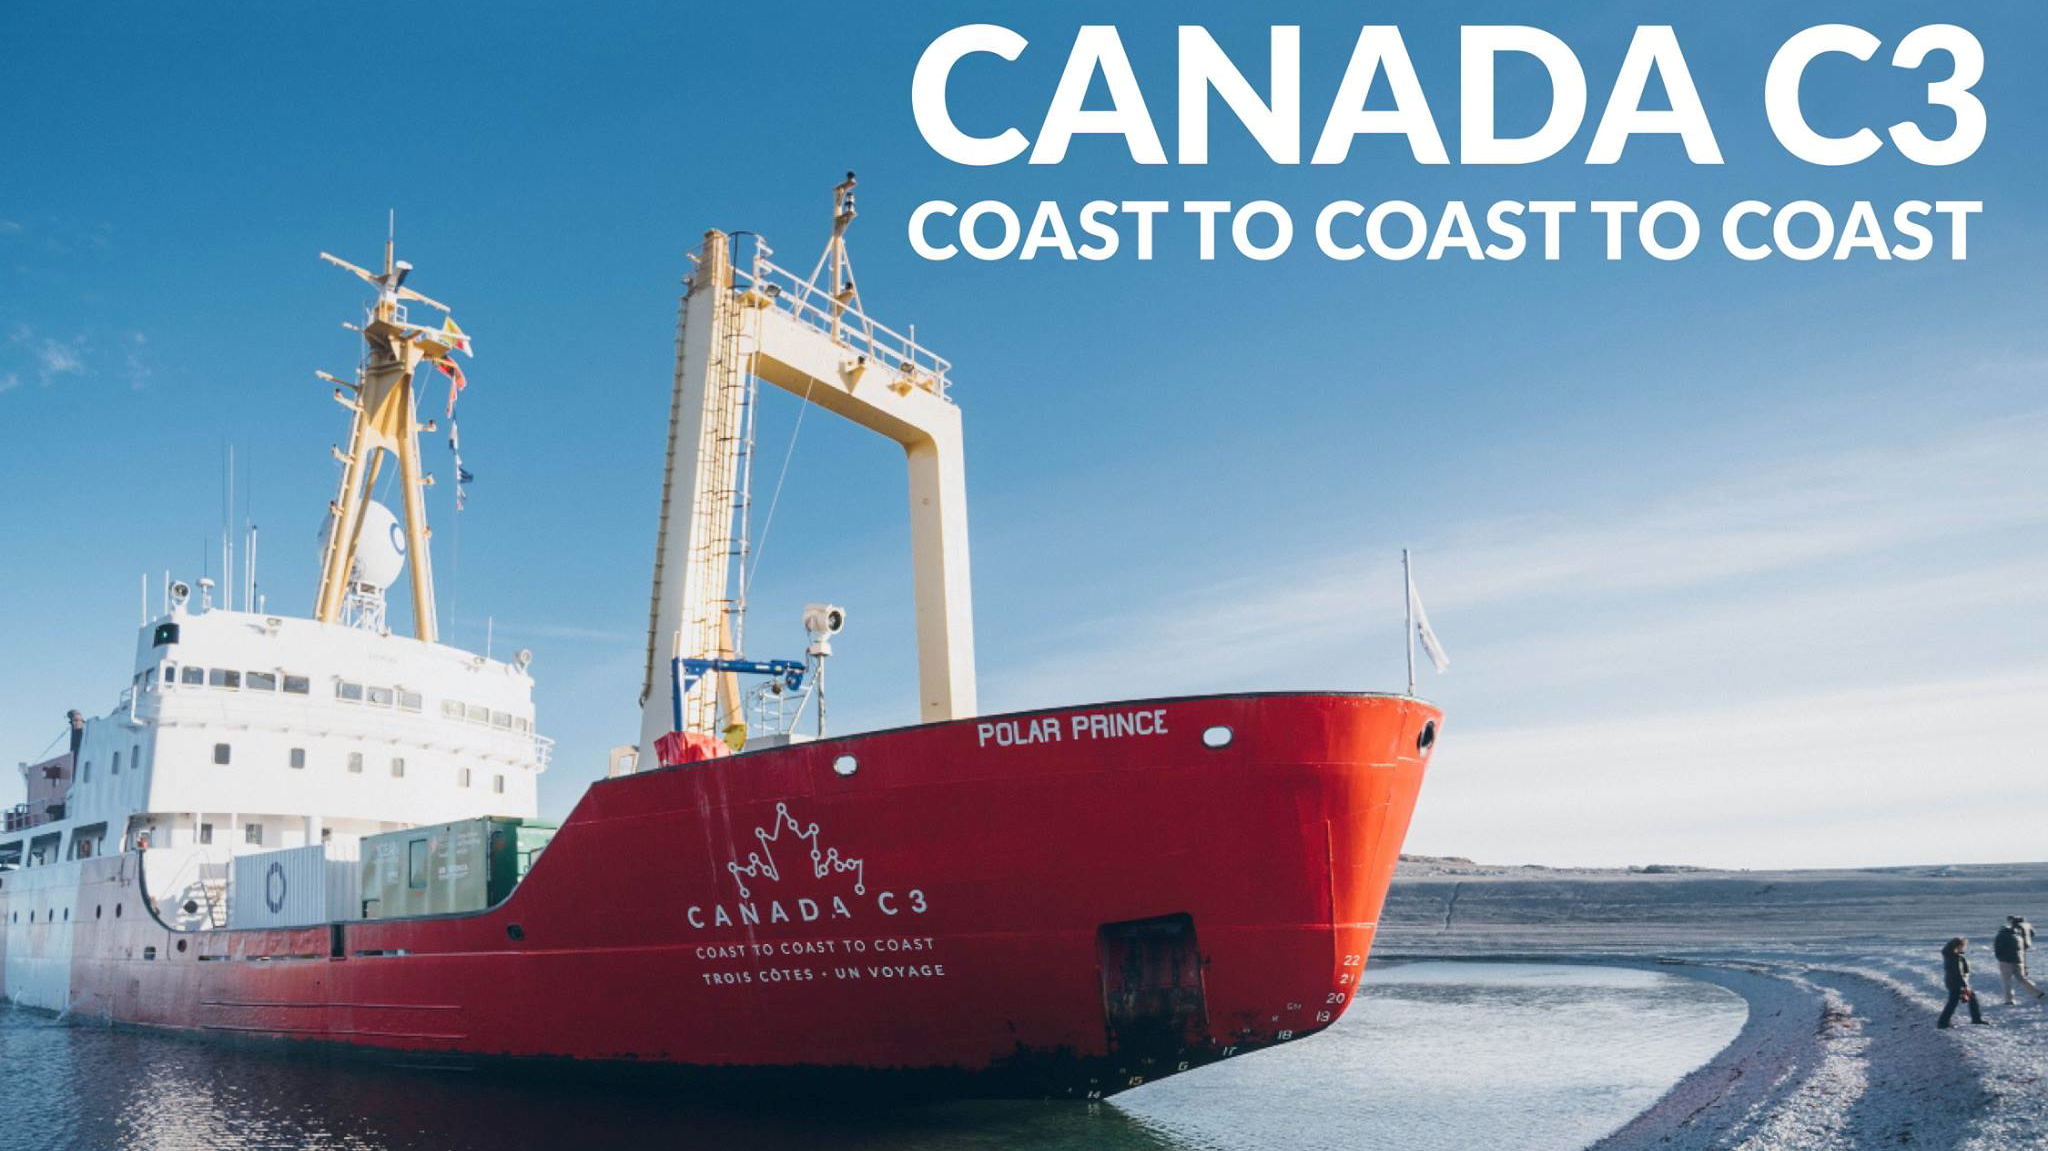 Trailer: Canada C3 - Coast to Coast to Coast